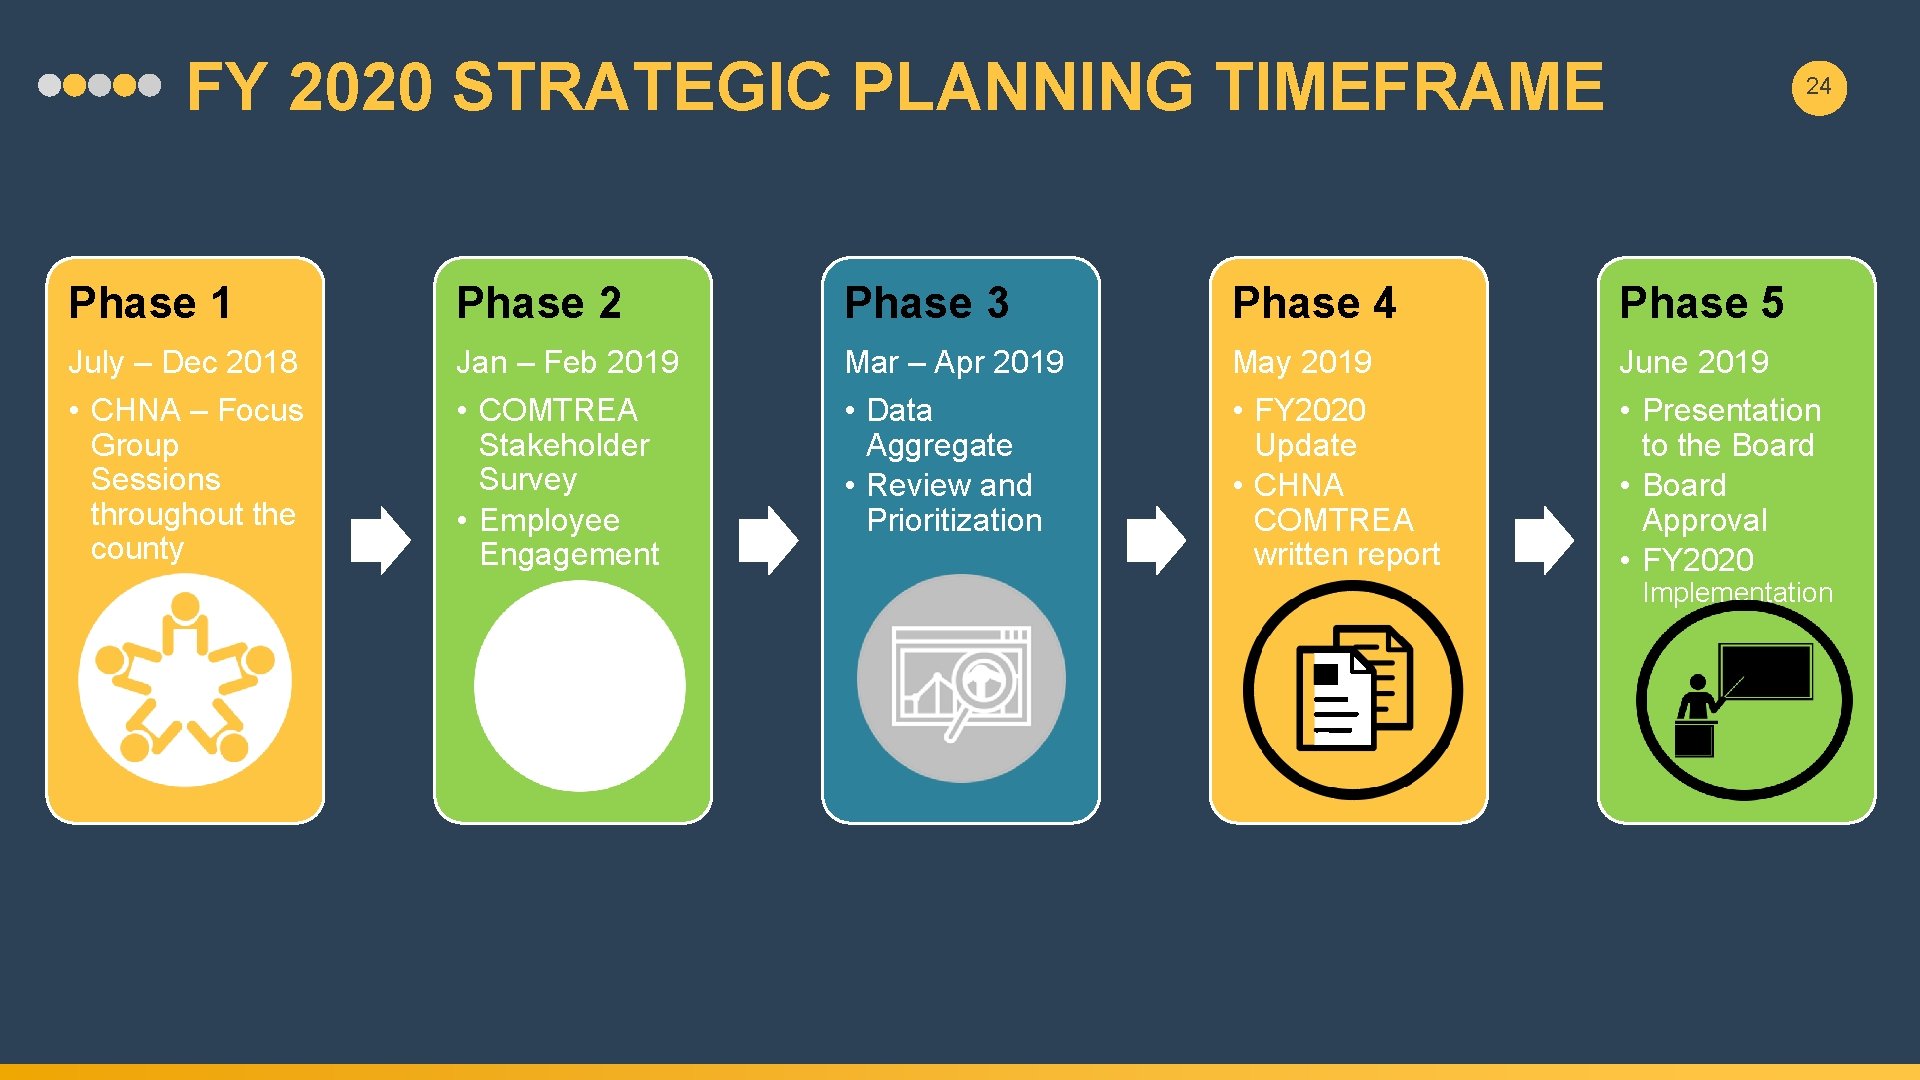 FY 2020 STRATEGIC PLANNING TIMEFRAME 24 Phase 1 Phase 2 Phase 3 Phase 4